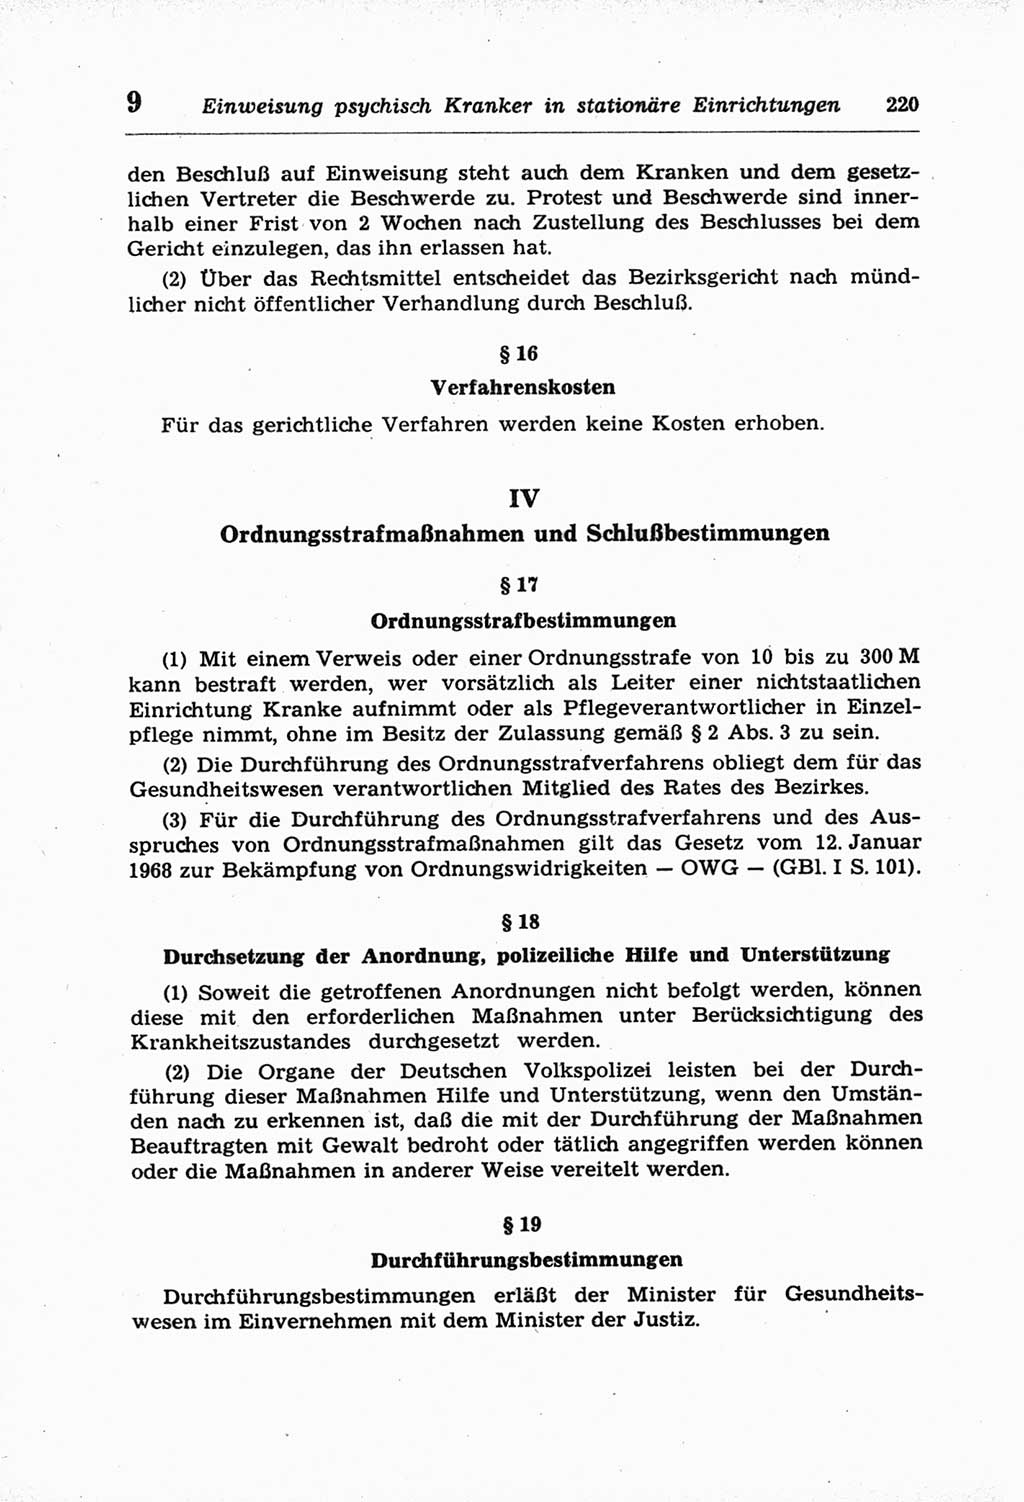 StrafprozeÃŸordnung (StPO) der Deutschen Demokratischen Republik (DDR) und angrenzende Gesetze und Bestimmungen 1968, Seite 220 (StPO Ges. Bstgn. DDR 1968, S. 220)